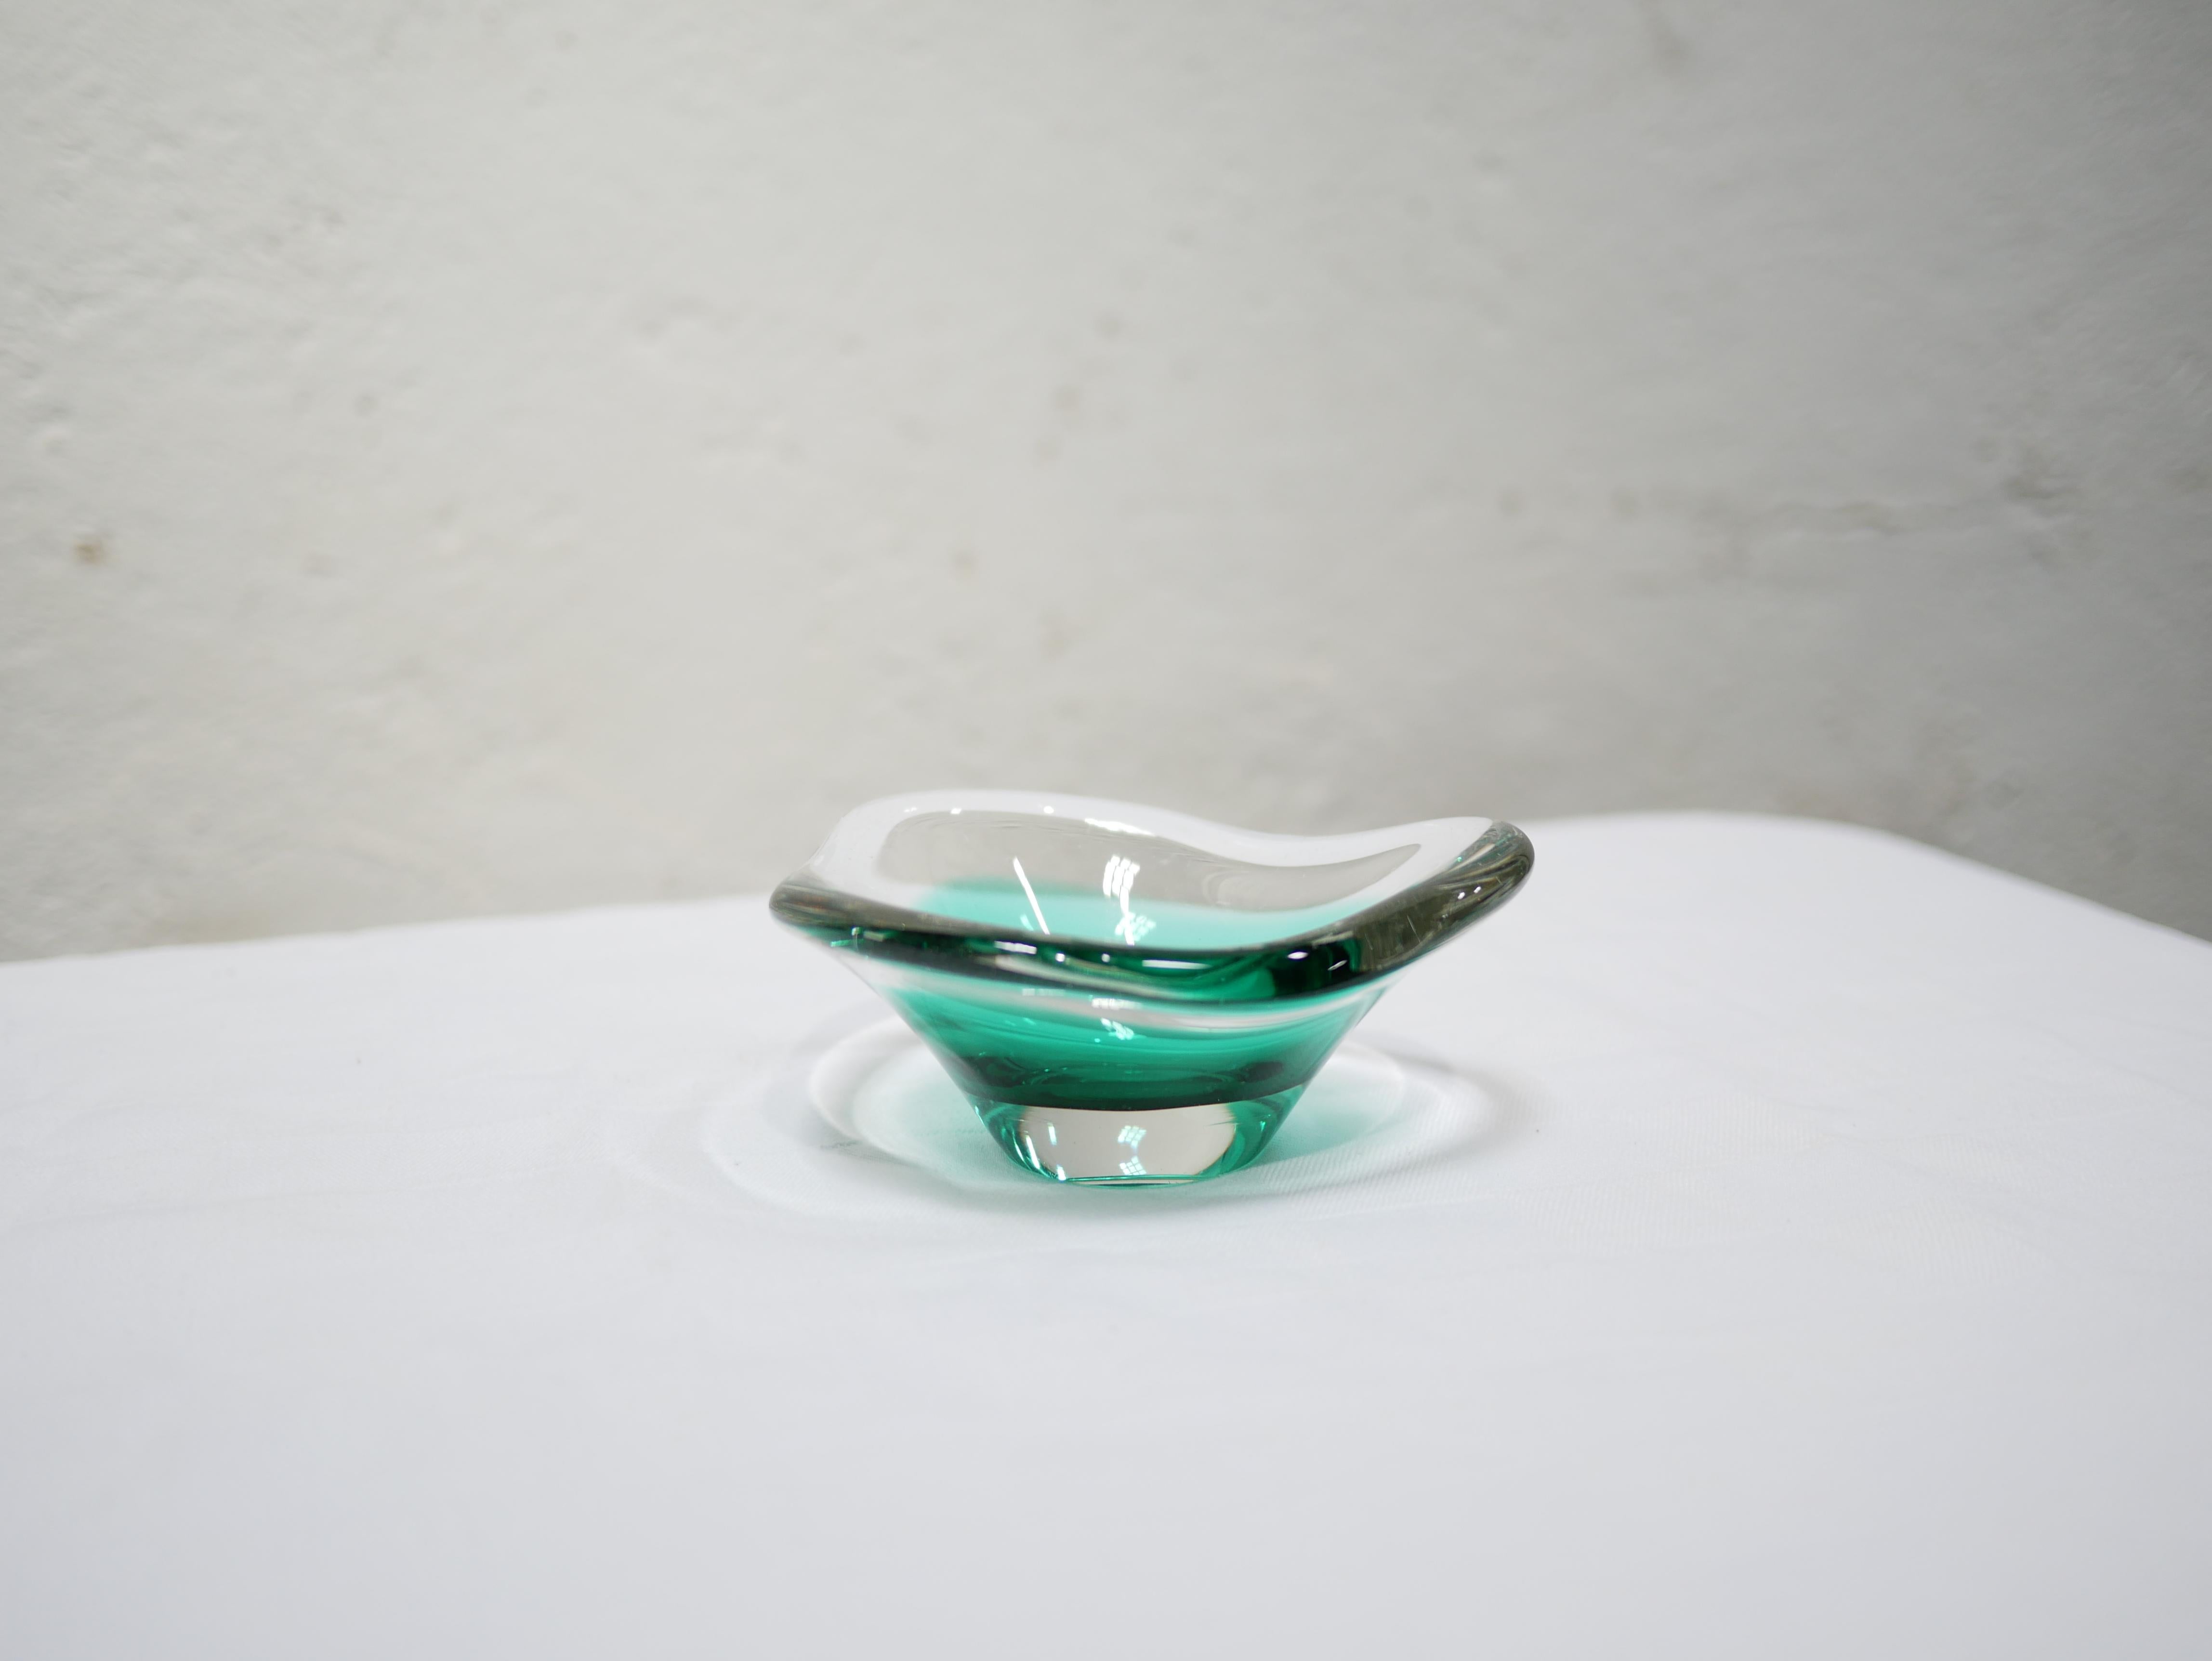 Vide-poche en verre de Murano des années 60.

Idéal pour la décoration, son verre épais et sa teinte verte lumineuse apporteront douceur et chaleur. De bonne taille, esthétique et de bonne qualité, le vide poche sera parfait dans une décoration